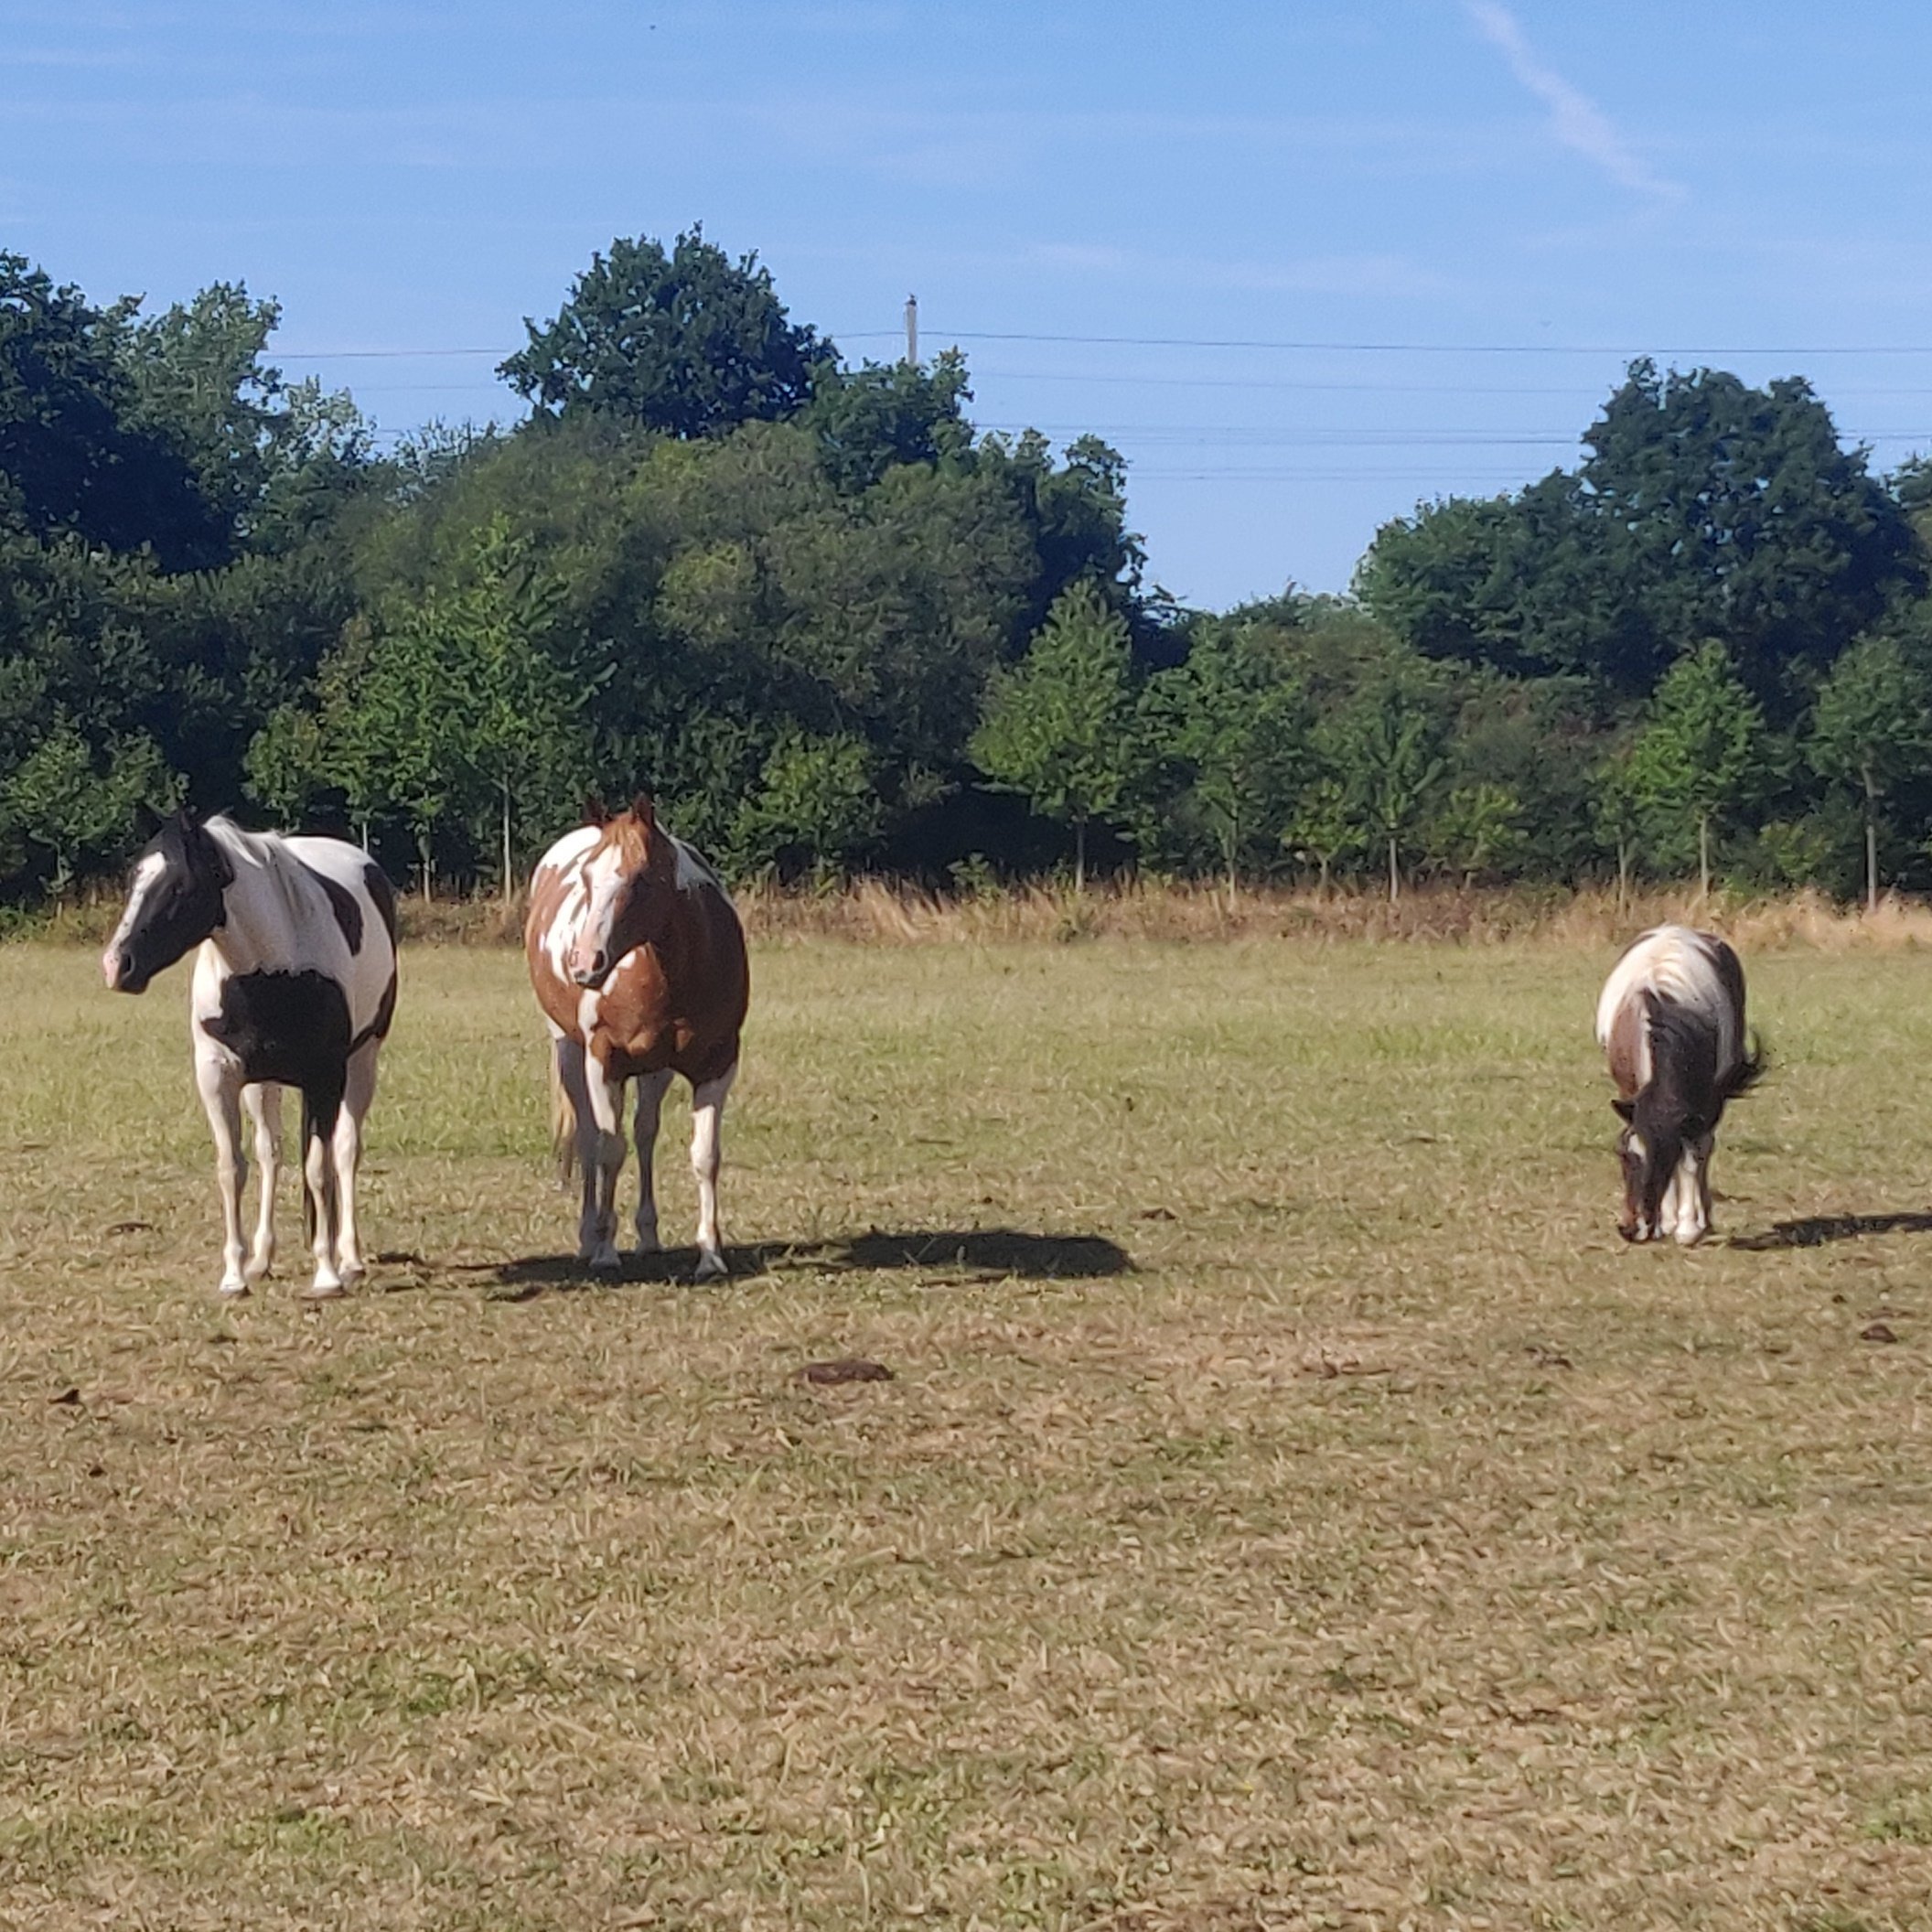 Trois chevaux dans un pré, faisant face à l'appareil photo. Le plus à droite broute, les deux autres regardent passer quelque chose situé hors cadre. Ils sont de couleur pie pour celui du milieu et pie noire pour les deux autres.